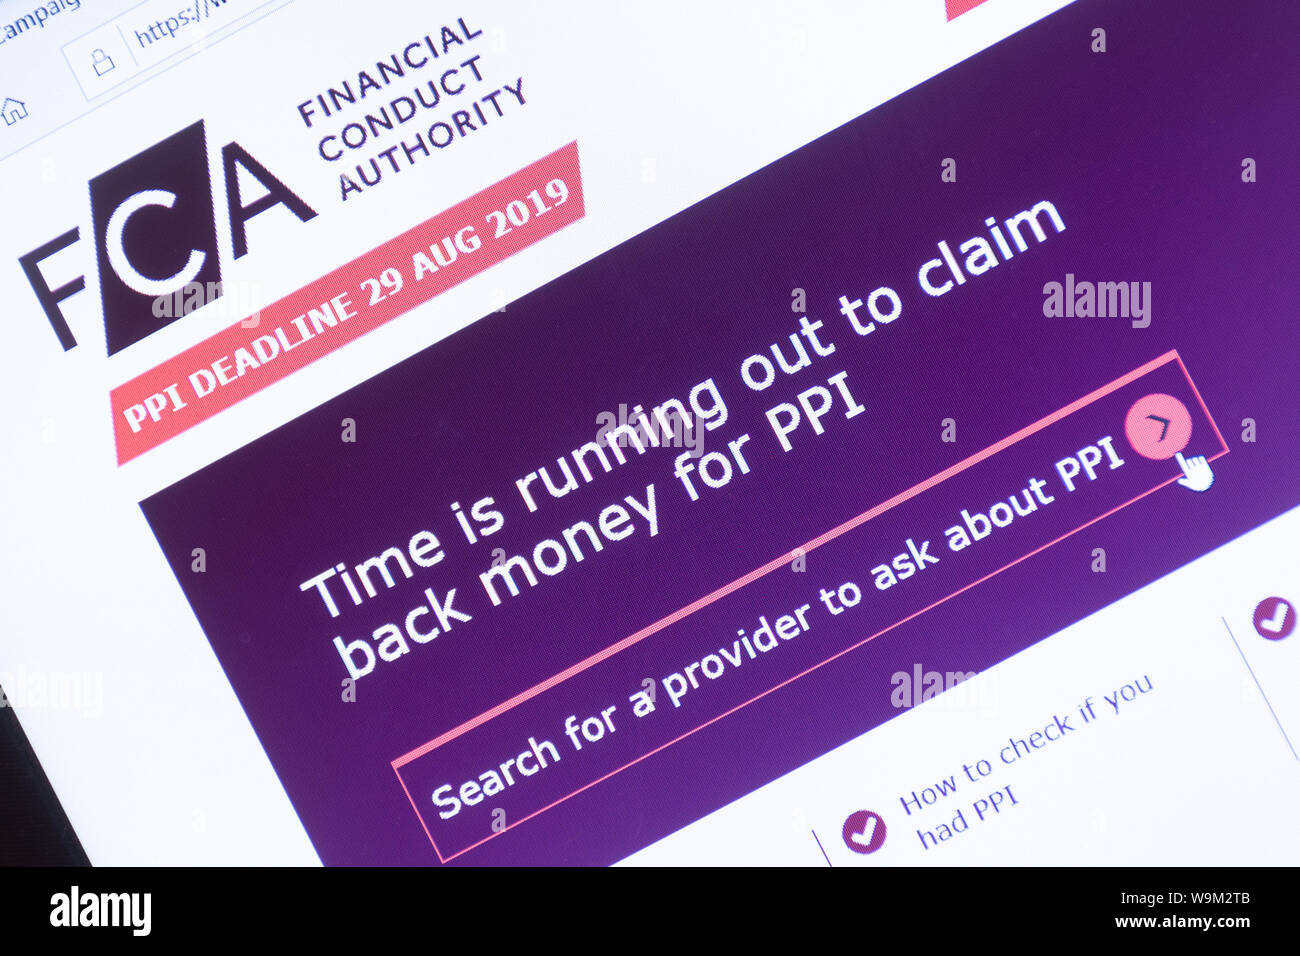 PPI Plazo de reclamación el 29 de agosto de 2019 sobre la conducta de la autoridad financiera (FCA) Sitio web aparece en la captura de pantalla de la pantalla de la laptop, Reino Unido. Foto de stock